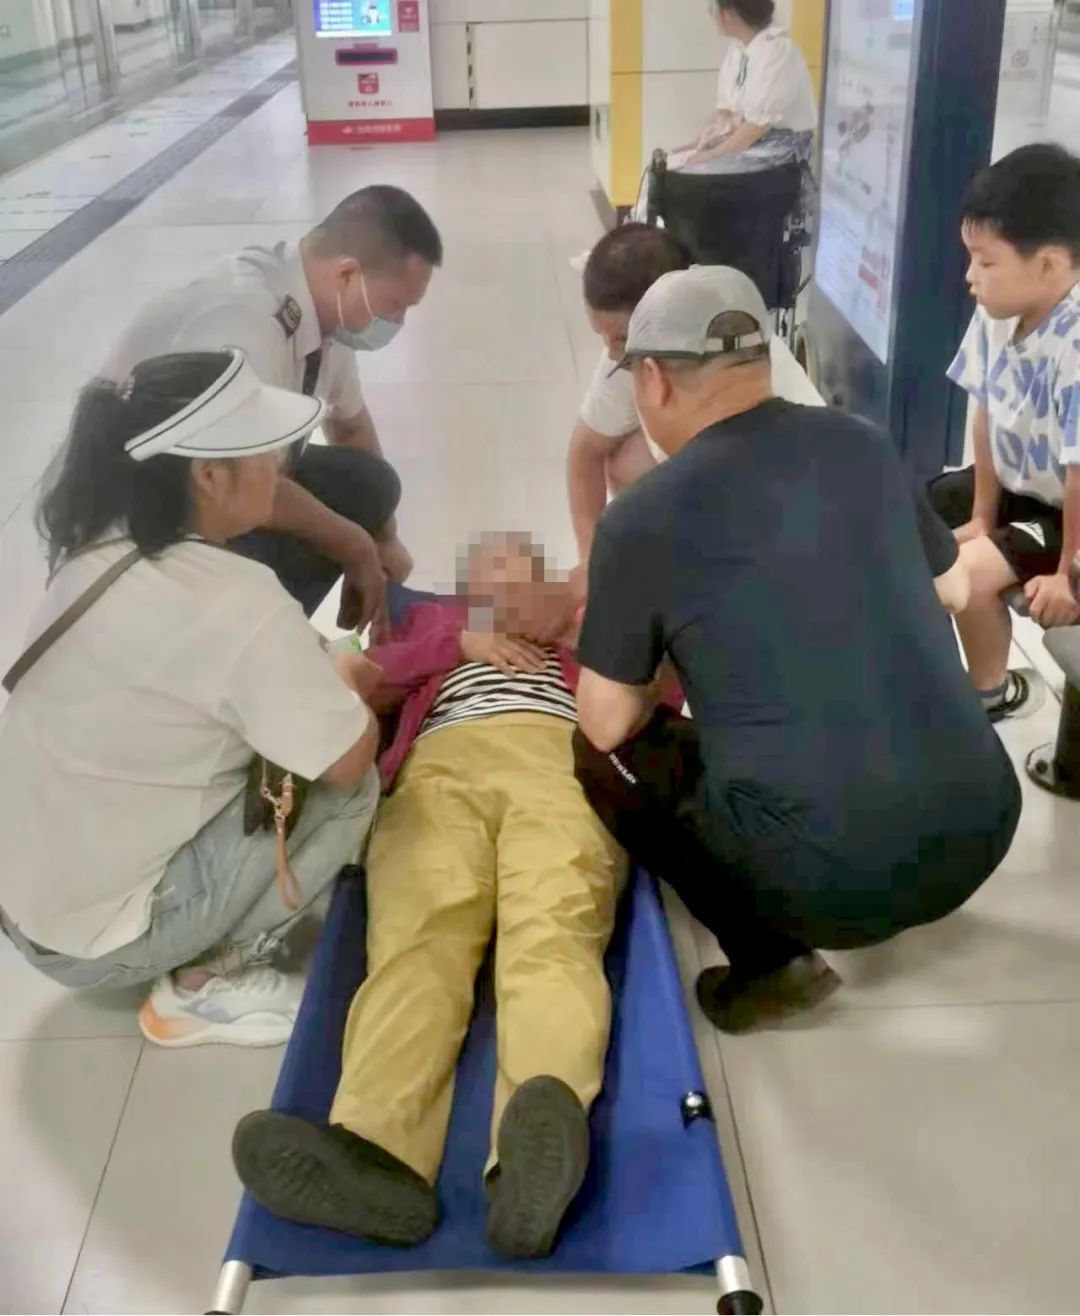 乘客受伤 女子晕倒 老人求助 孕妇不适 母子走散【在上海地铁总能遇难呈祥】_车站